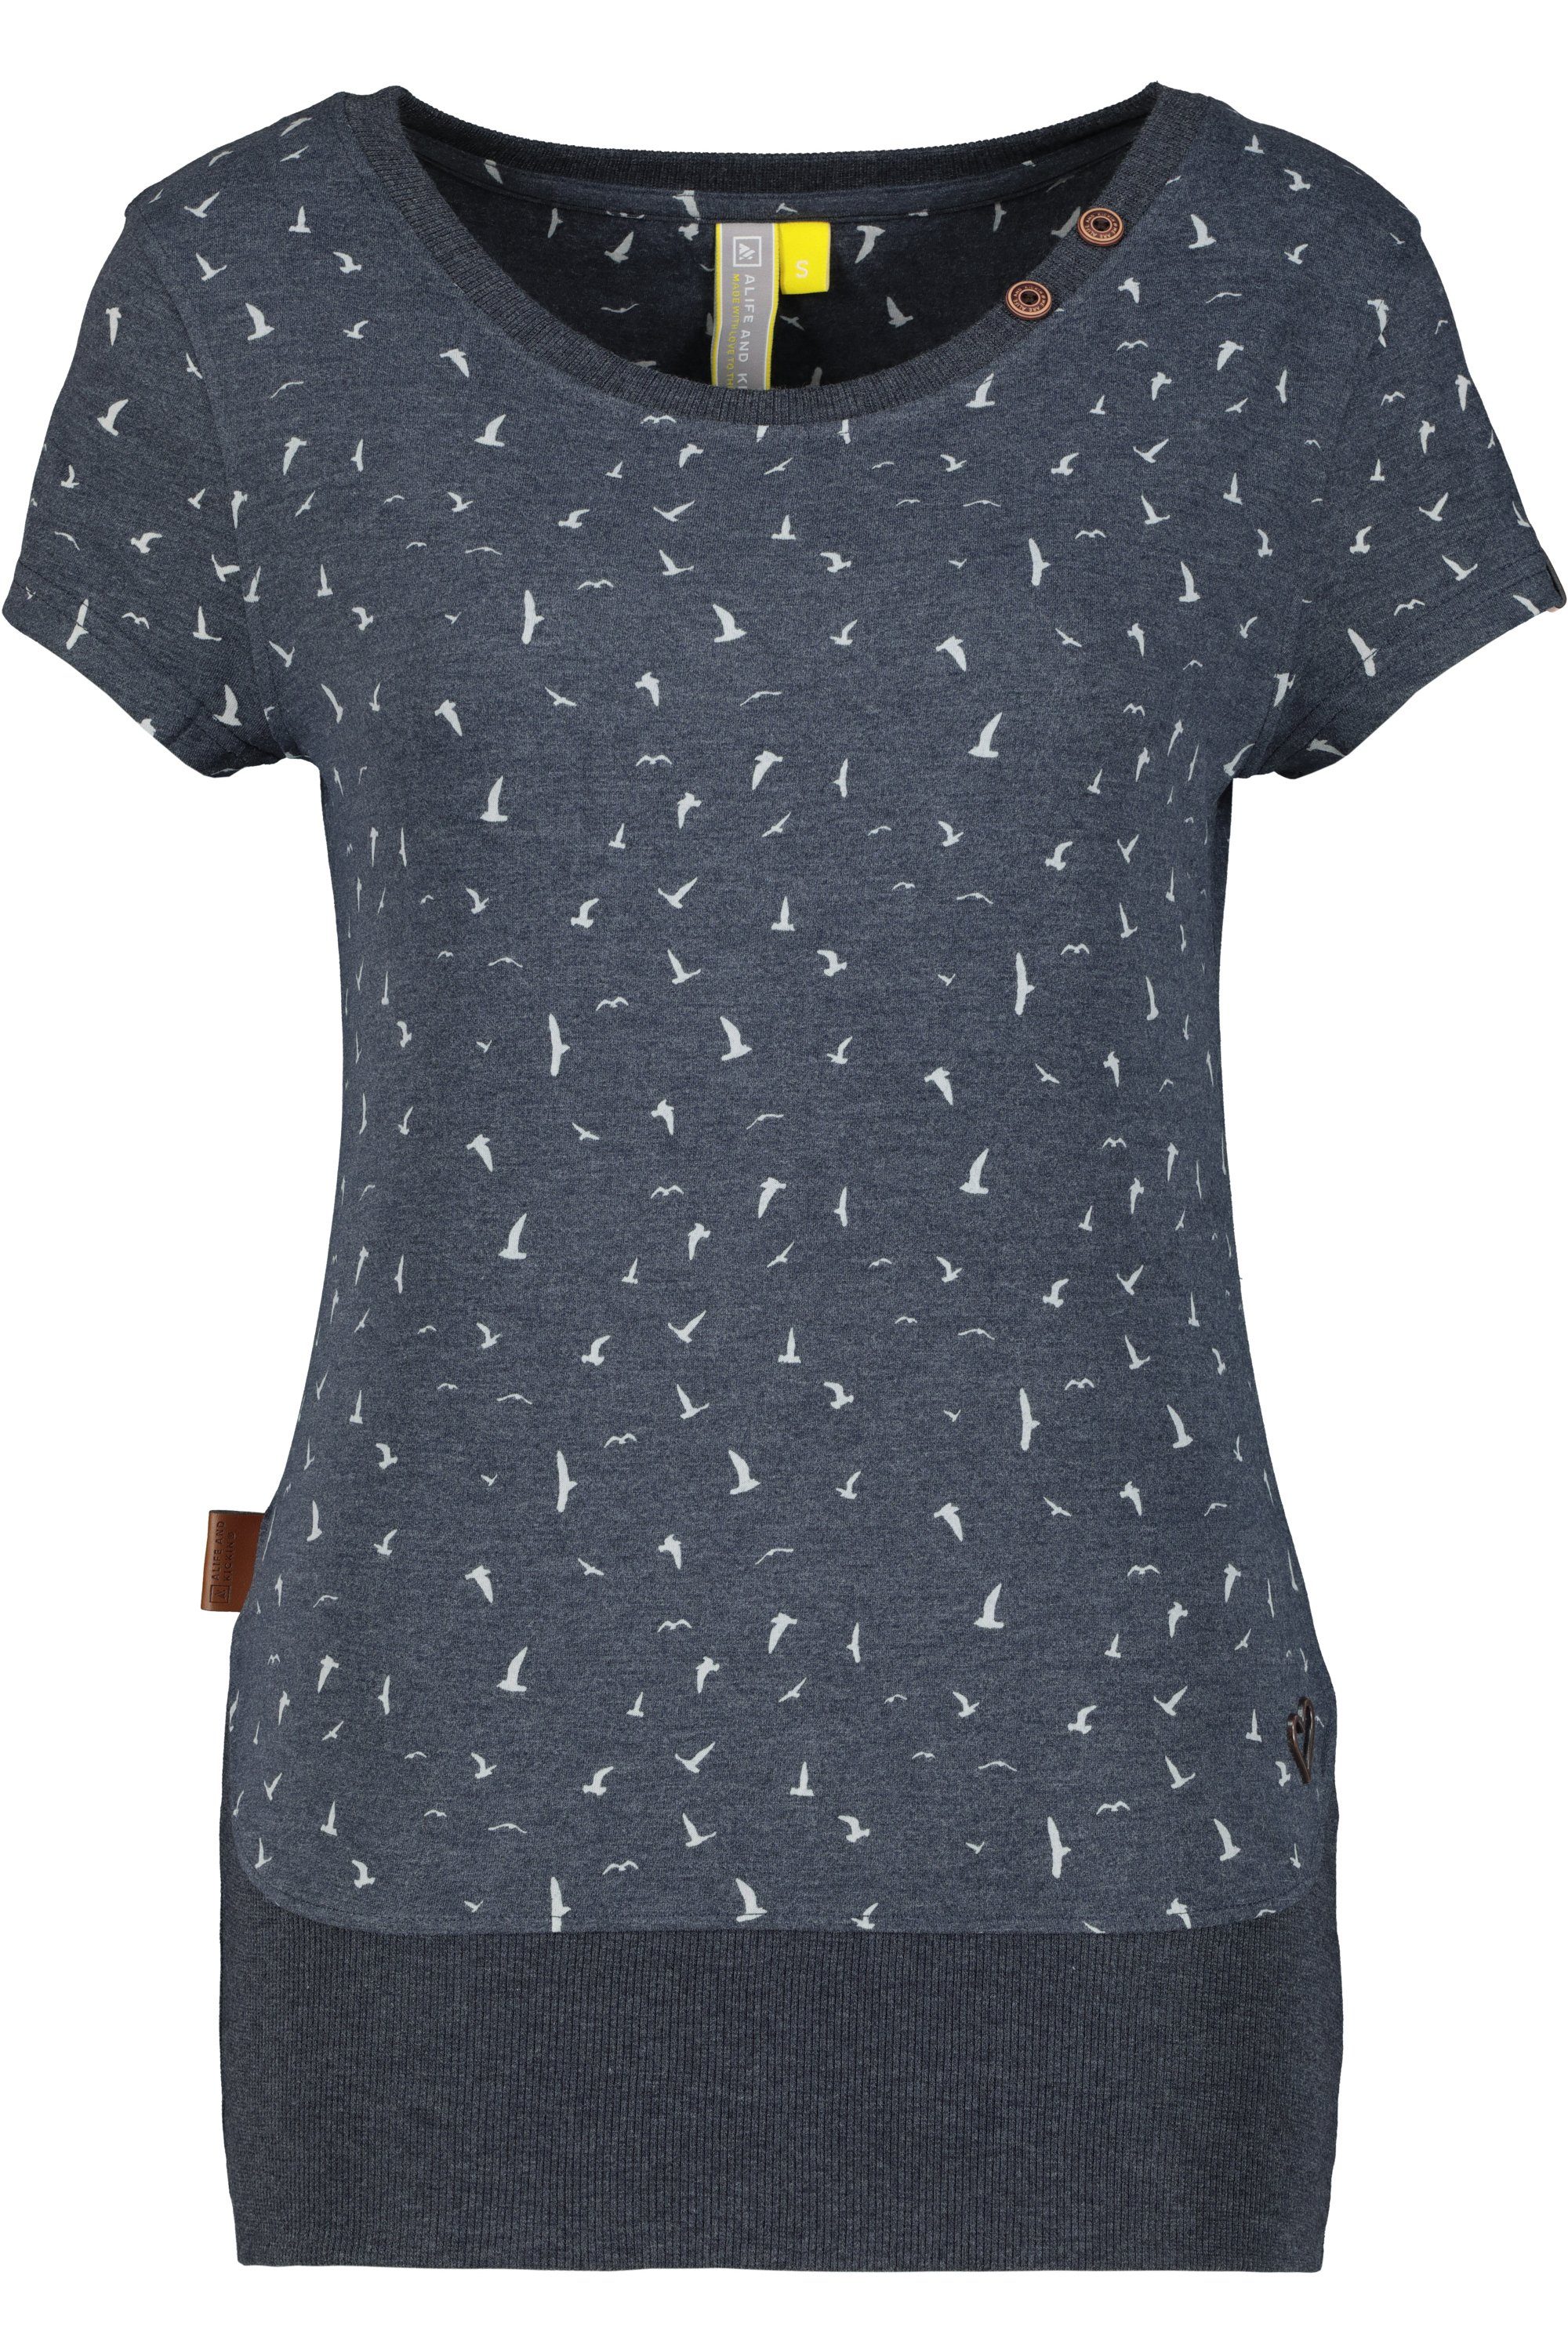 Alife & Kickin T-Shirt Damen marine CocoAK T-Shirt